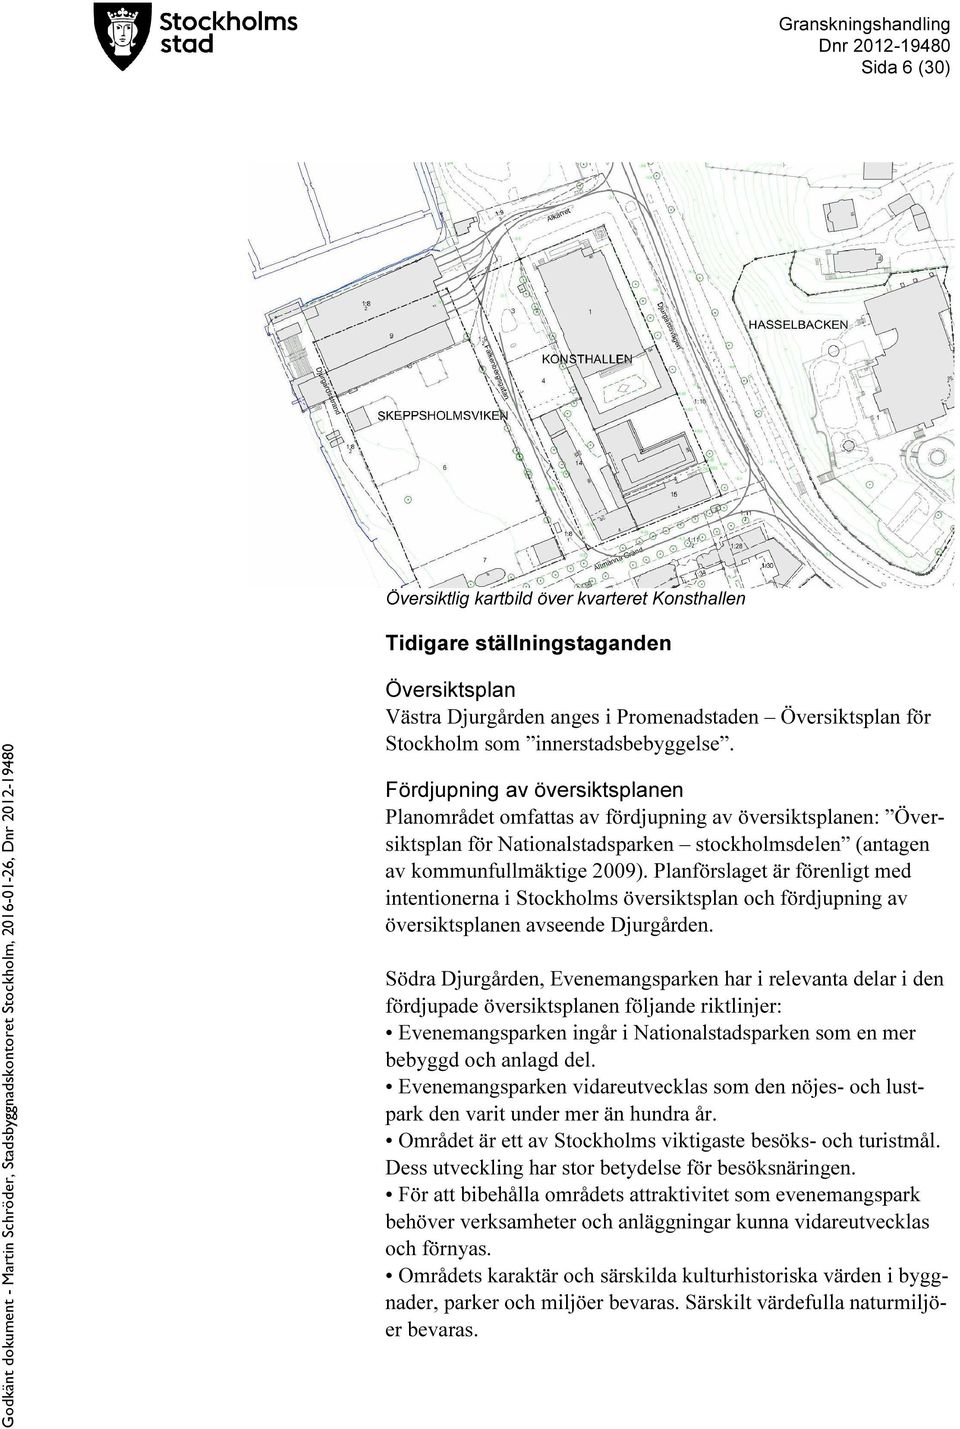 Planförslaget är förenligt med intentionerna i Stockholms översiktsplan och fördjupning av översiktsplanen avseende Djurgården.